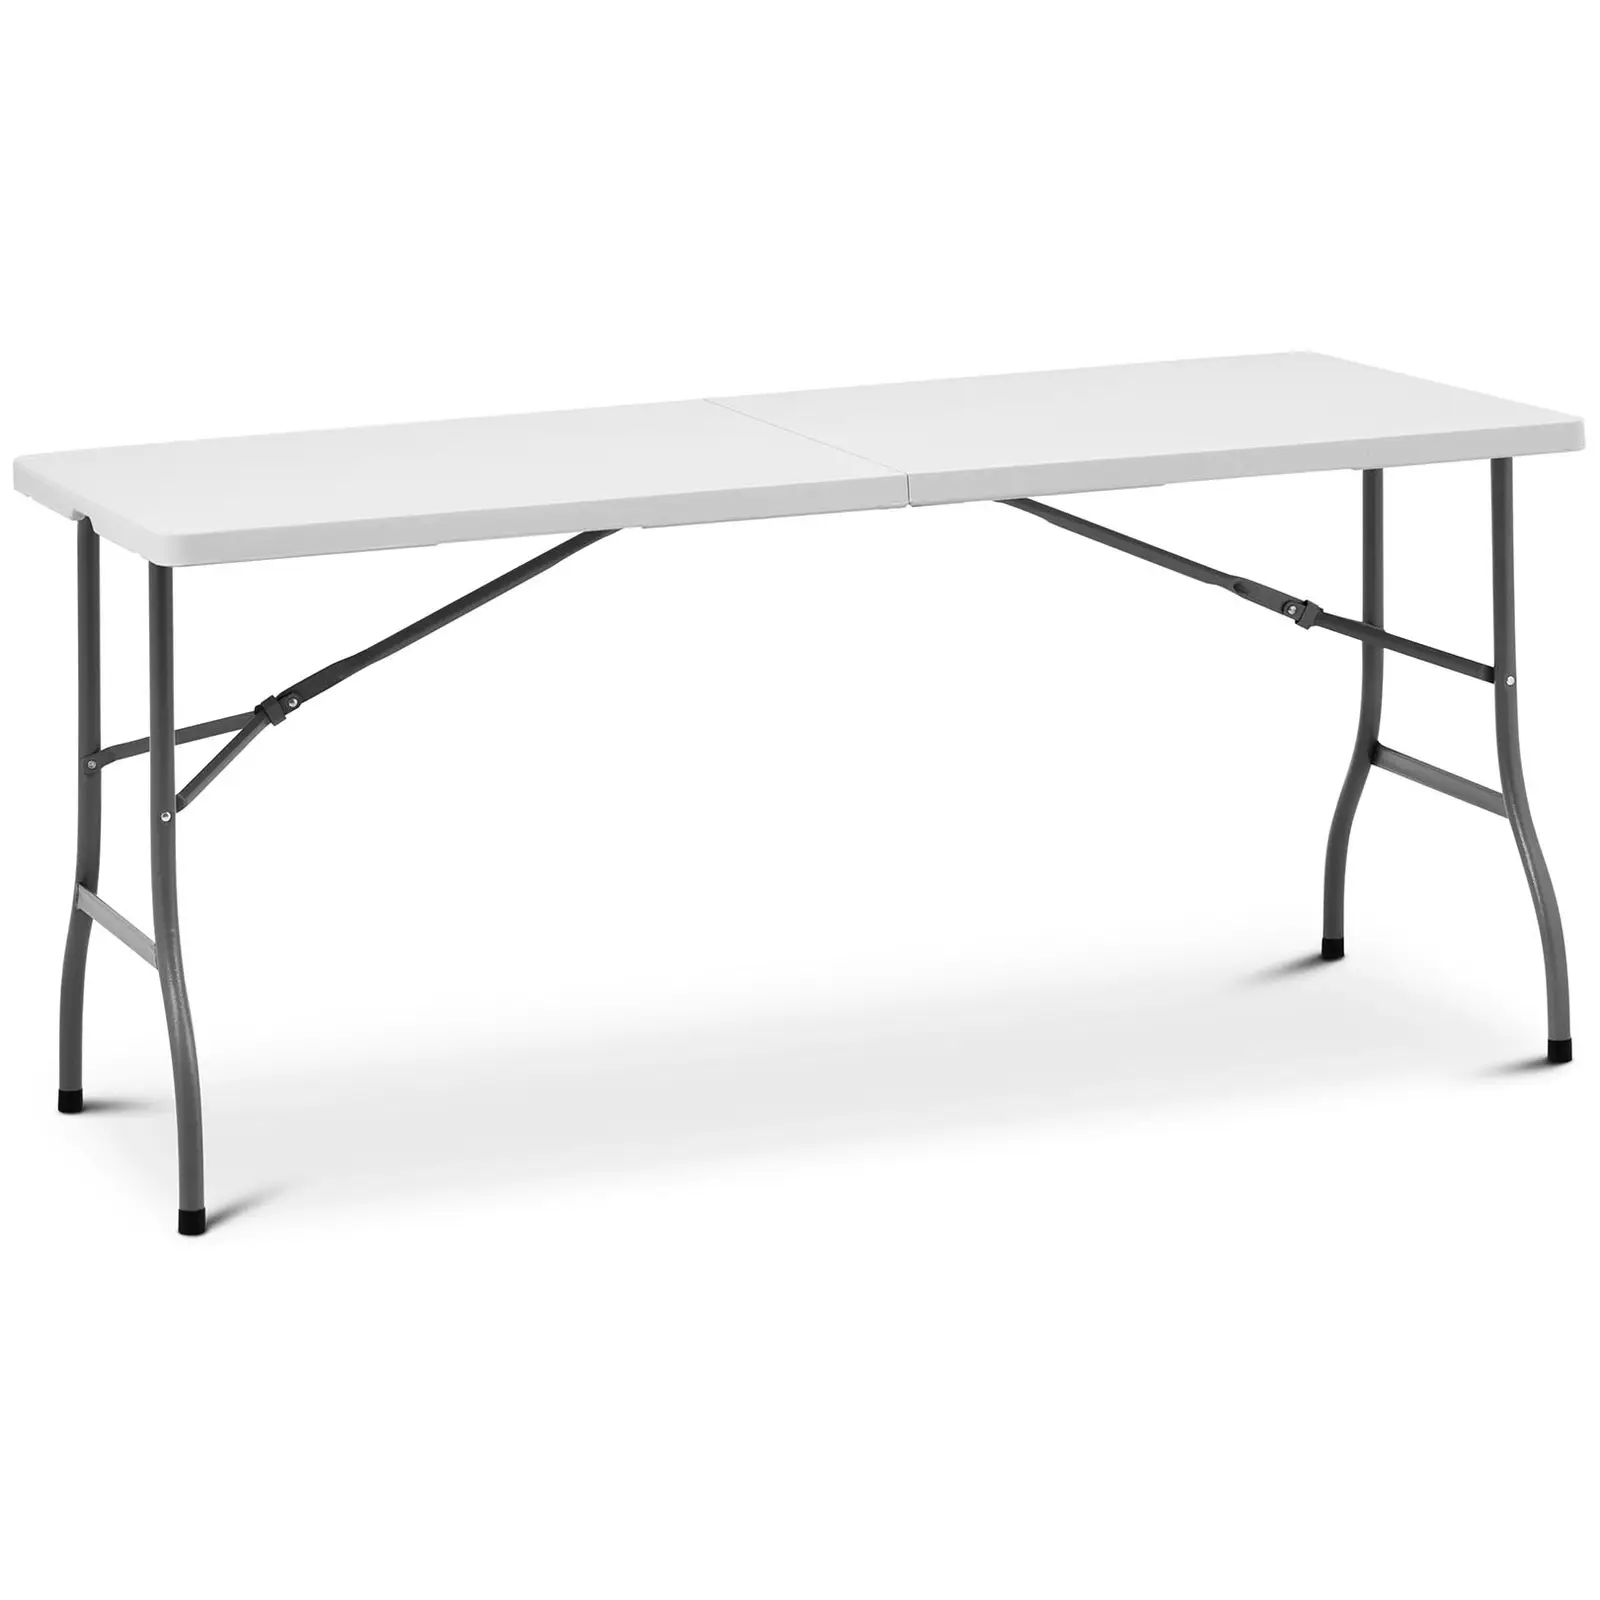 Table pliante - 1 520 x 700 x 740 mm - Royal Catering - 150 kg - Intérieur/extérieur - Blanche